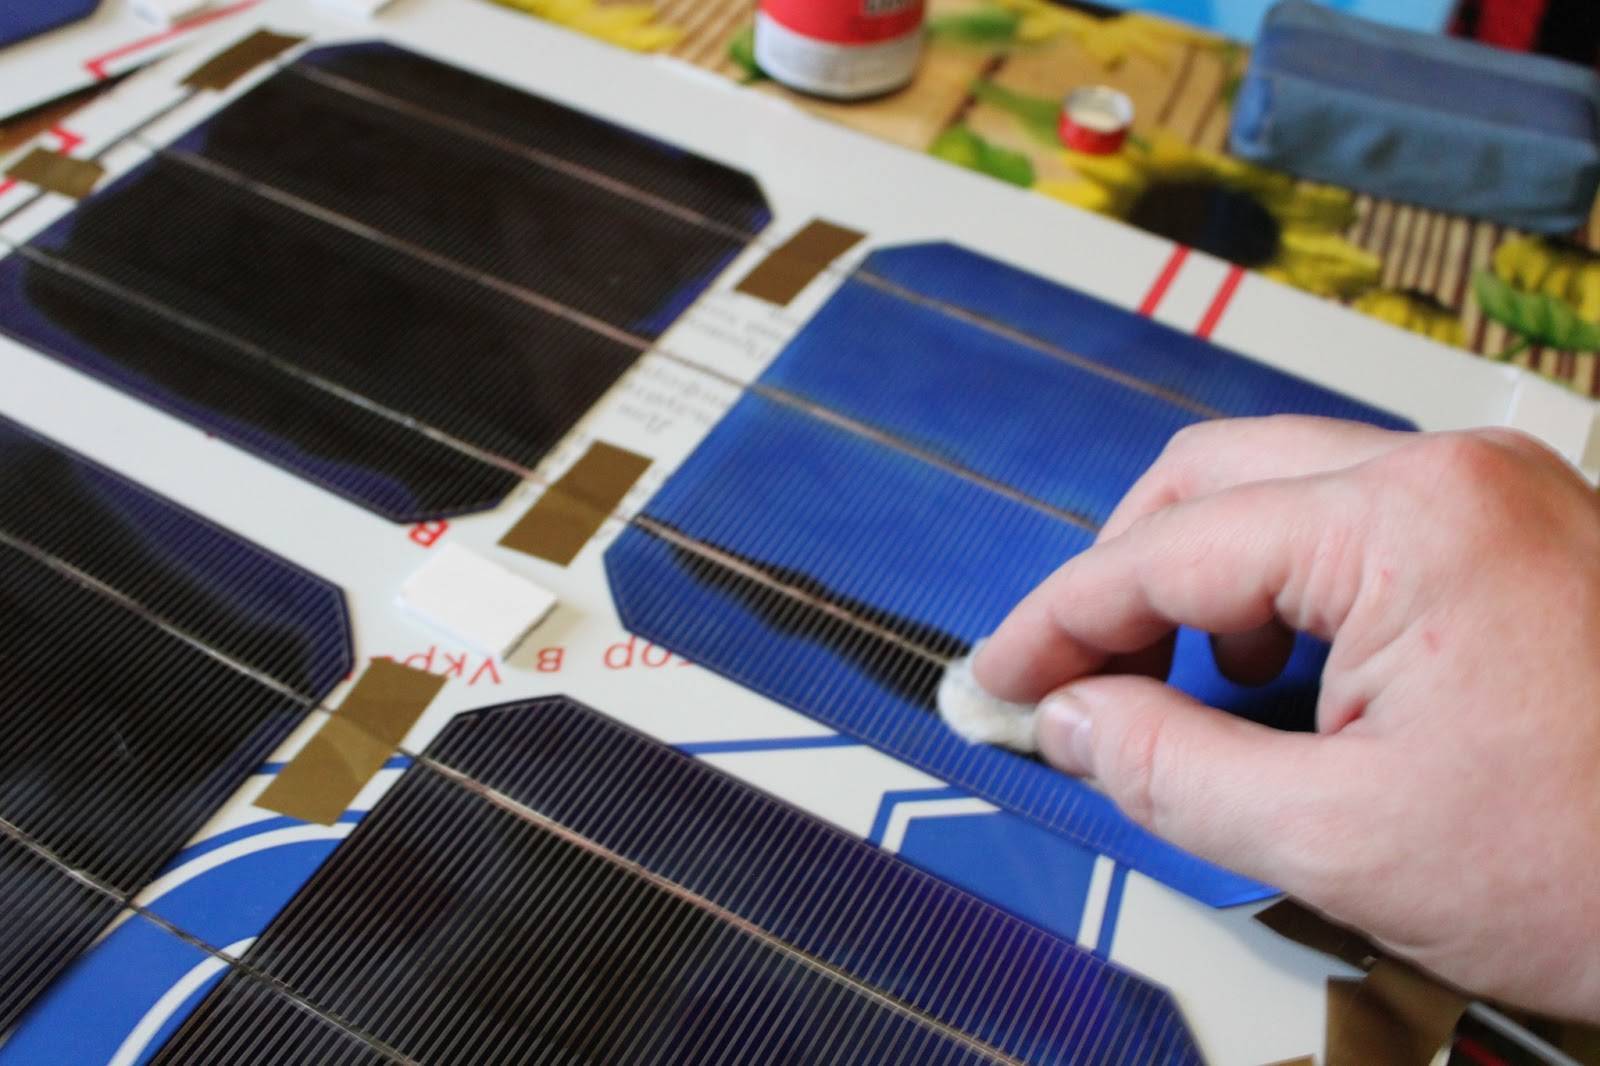 Солнечная батарея для дома своими руками - пошаговая инструкция, видео по установке своими руками